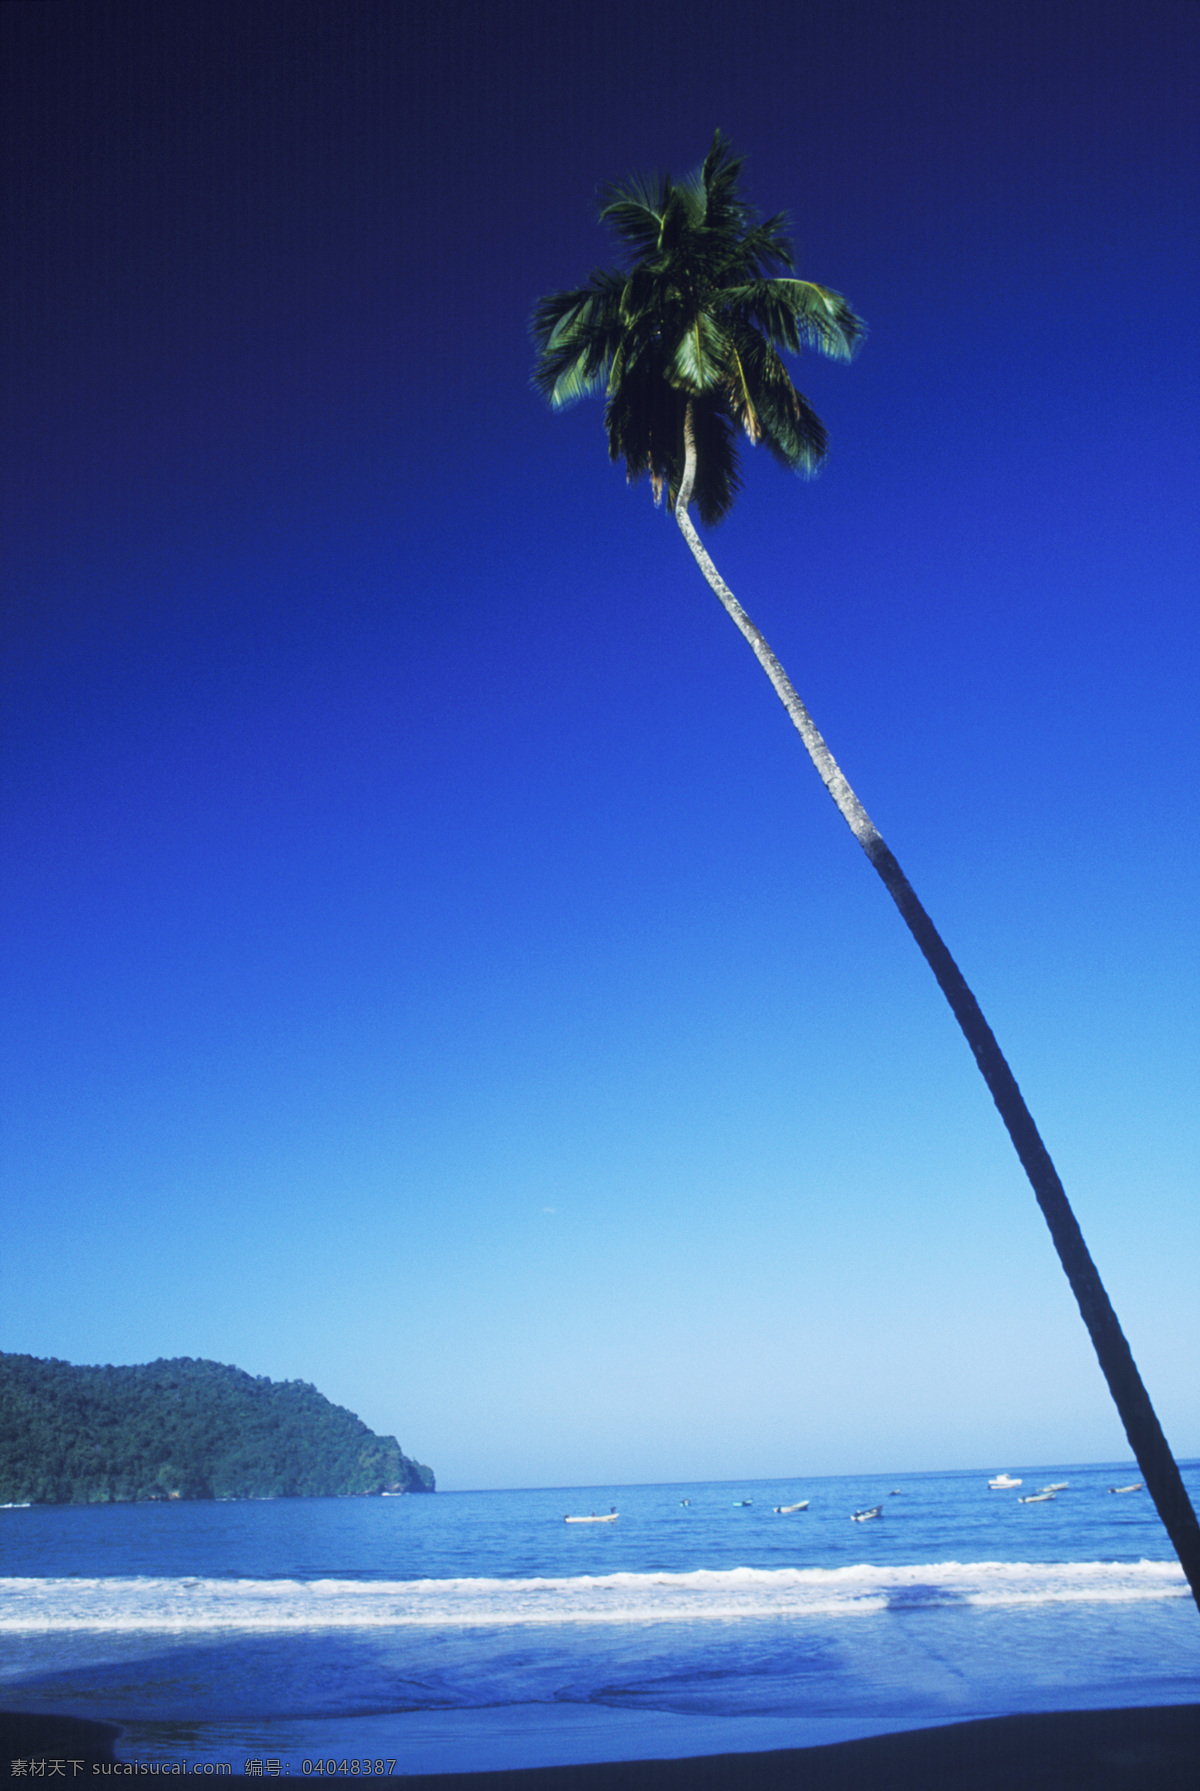 海边 孤零零 椰子树 海浪 大海 漂亮 美景 风景 海岸 岸边 加勒比海岸 高清图片 大海图片 风景图片